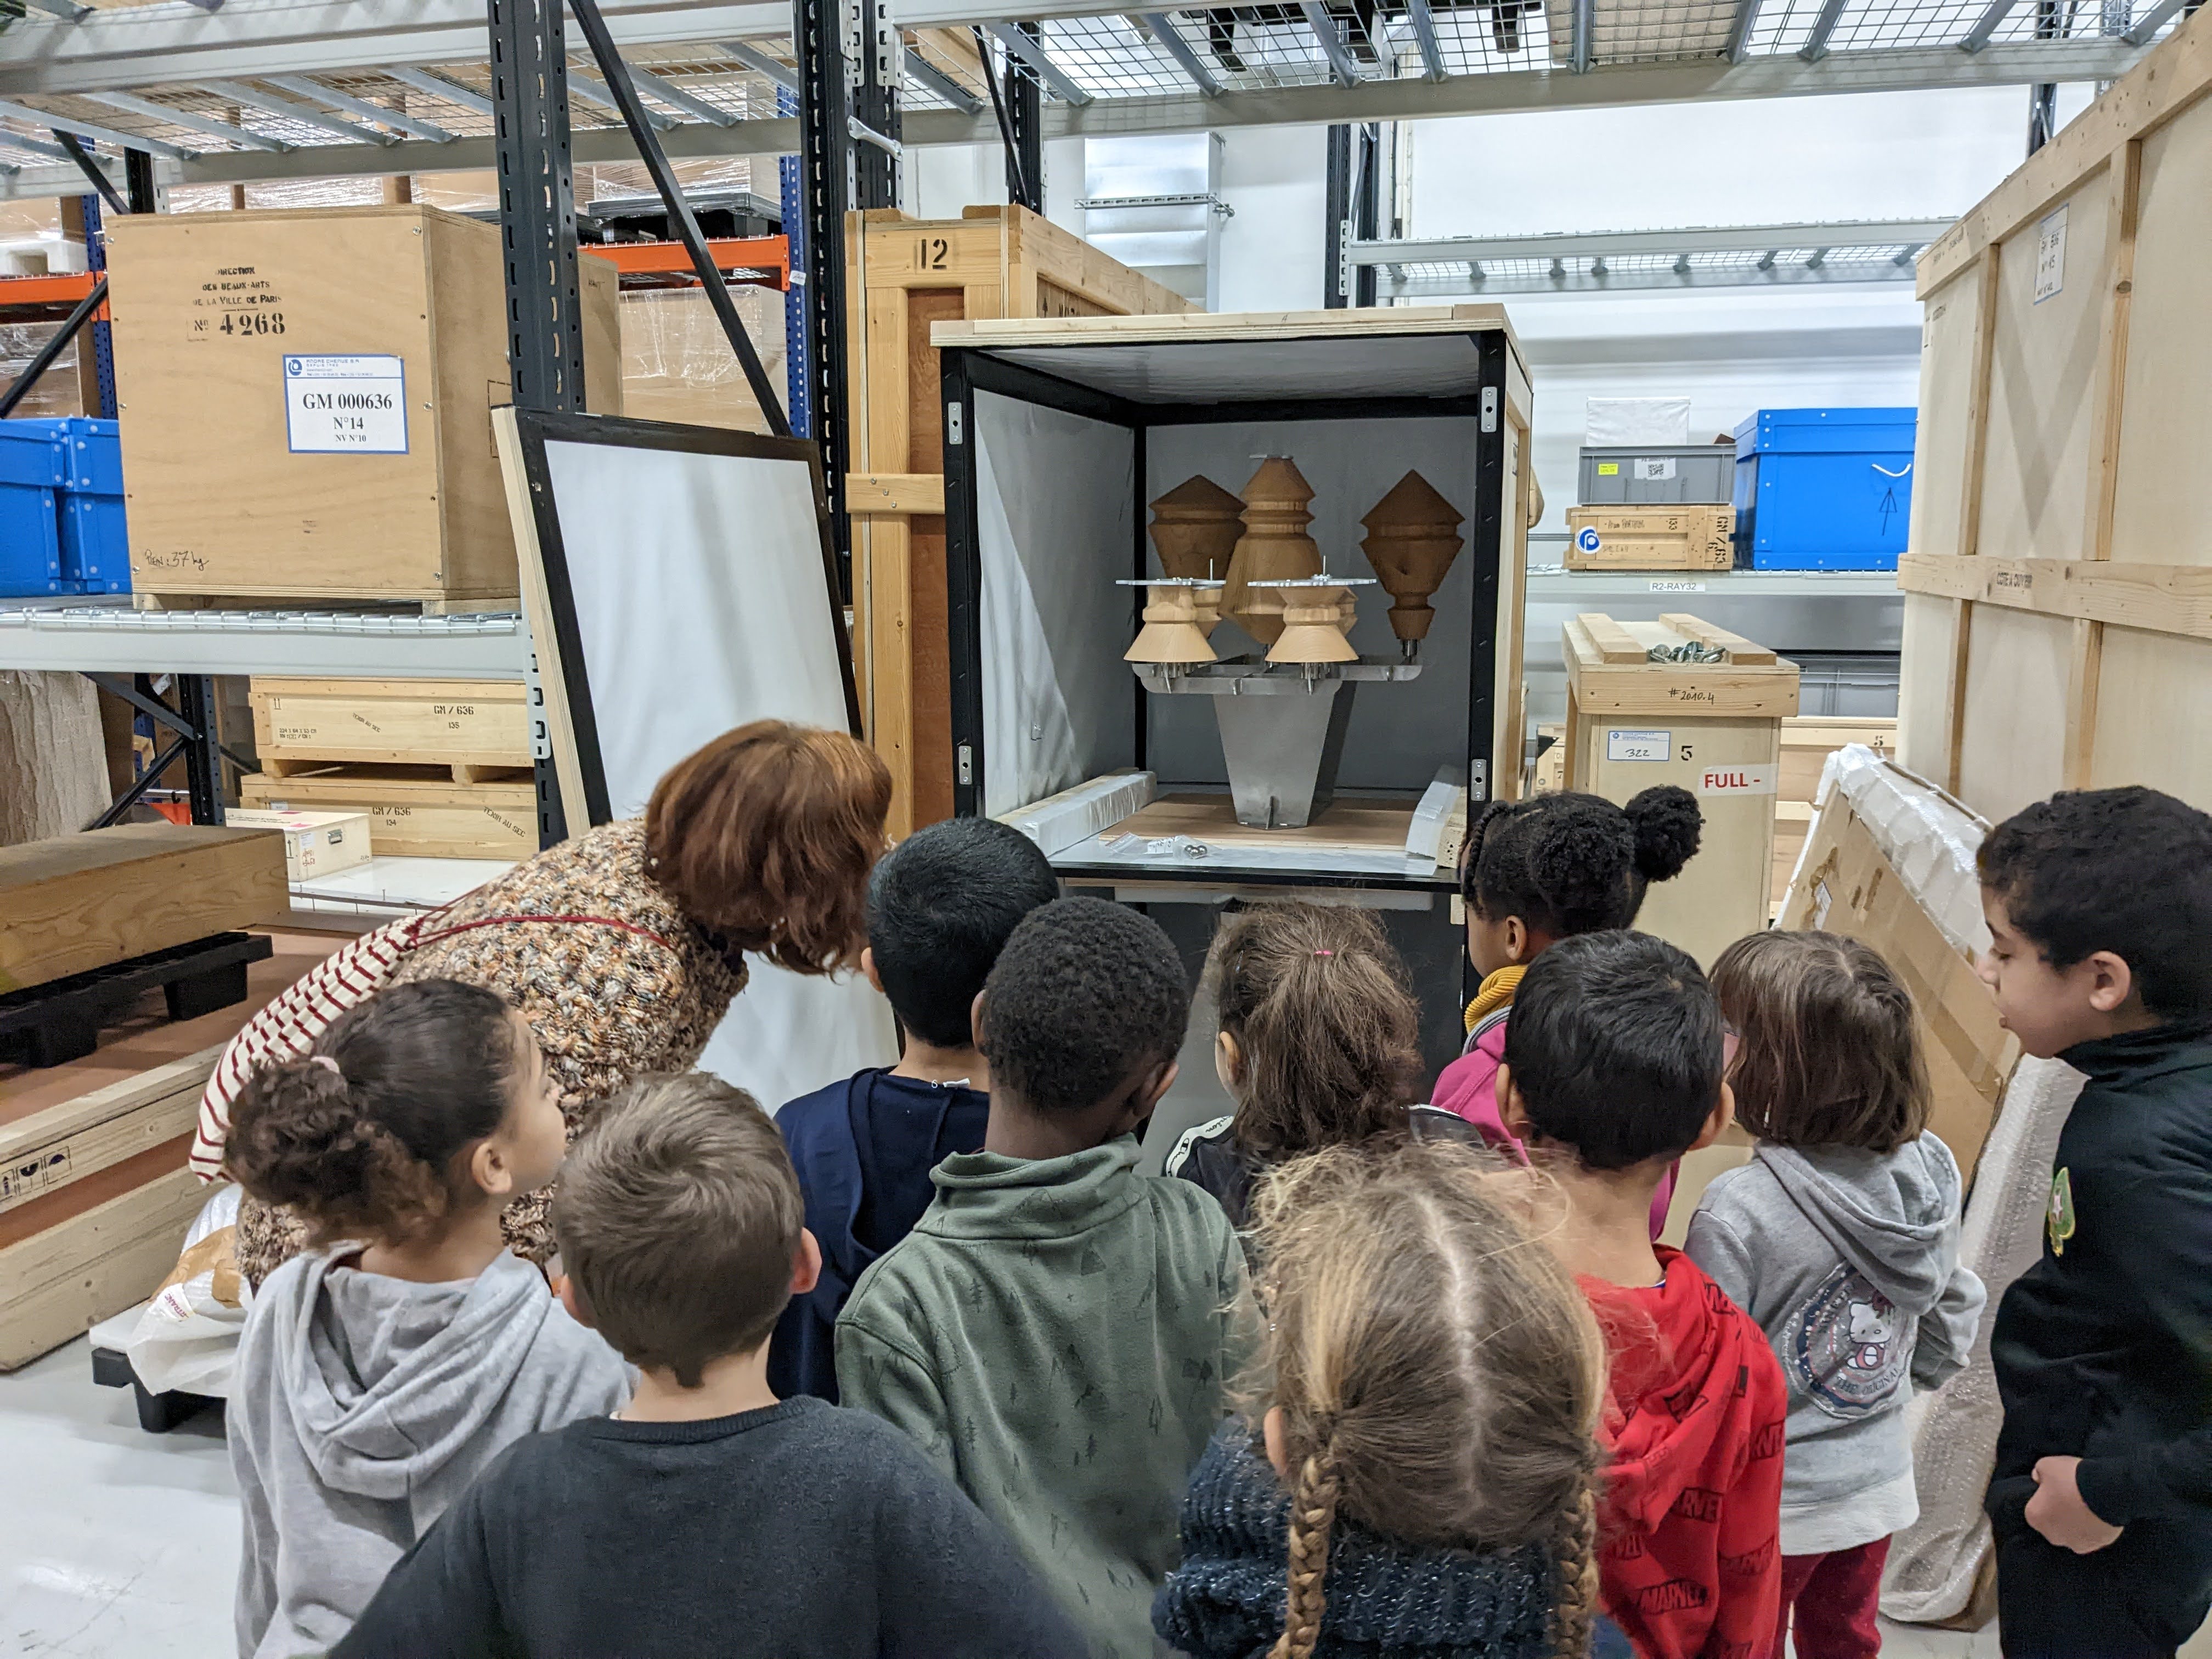 Les CE1 de l'école élémentaire de Télégraphe découvrent les réserves du Fonds. Ici, une caisse de conservation ouverte dévoile des détails de l'œuvre de Florian Sumi, intitulée [Clockworks #2] de 2014.